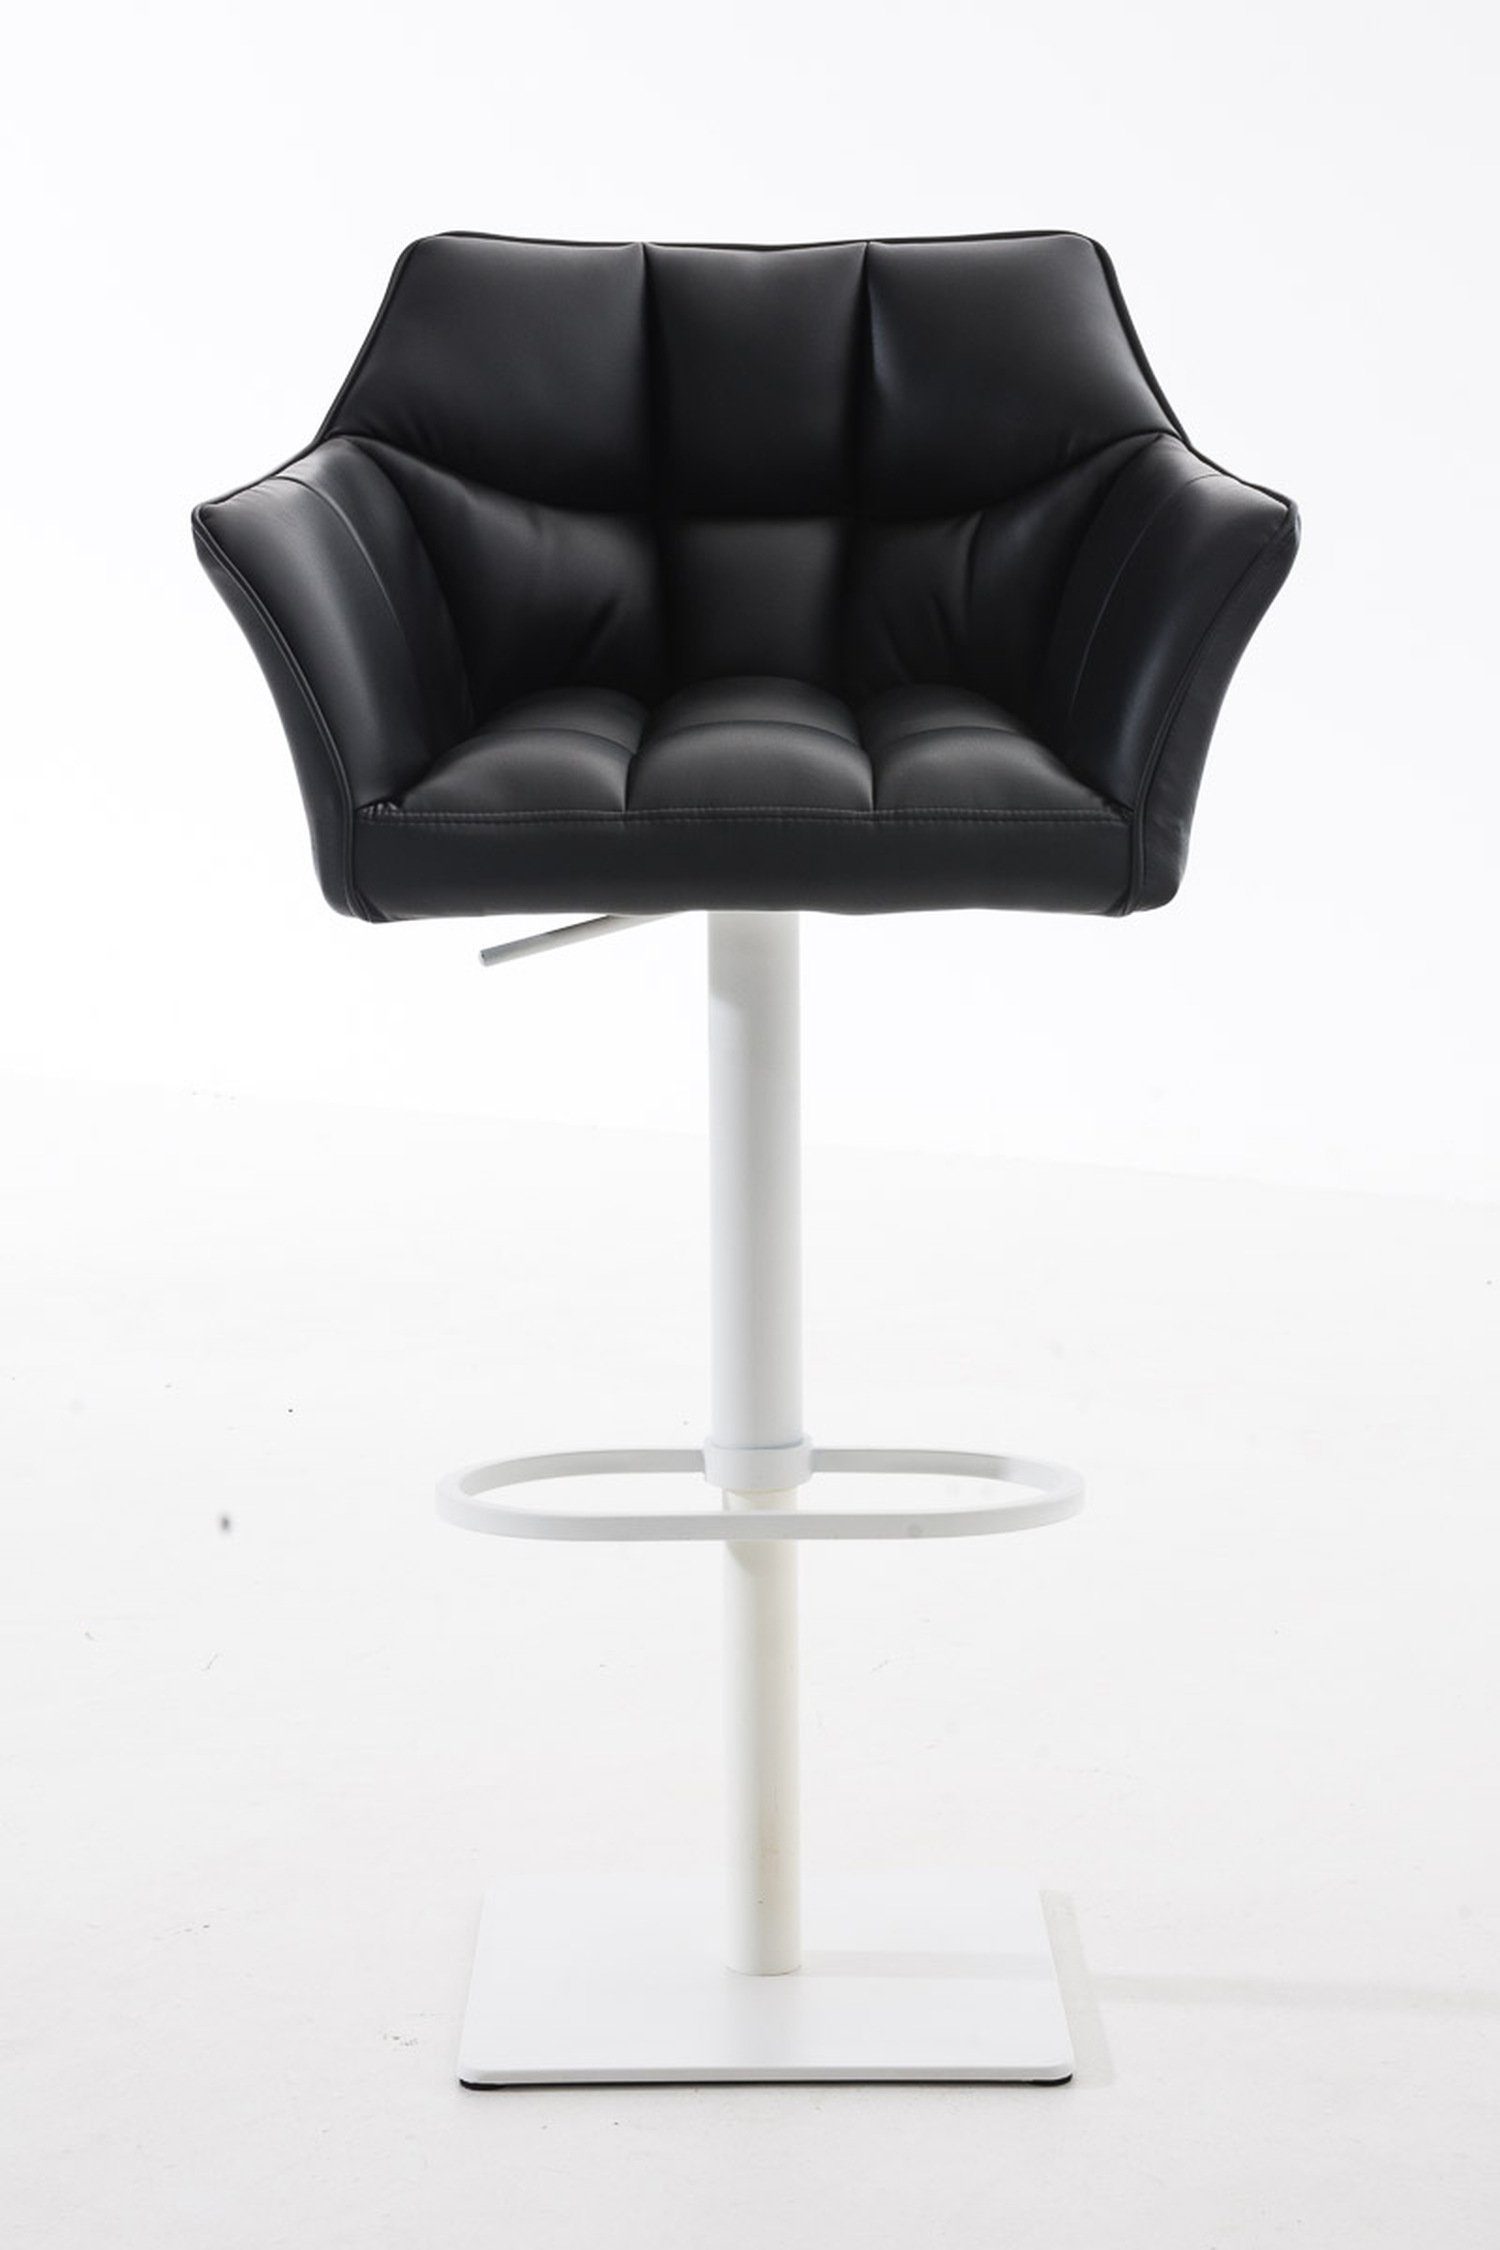 und für & Küche), Theke Schwarz - drehbar Metall Fußstütze - Rückenlehne Hocker Damaso weiß - Sitzfläche: Barhocker (mit 360° Kunstleder TPFLiving